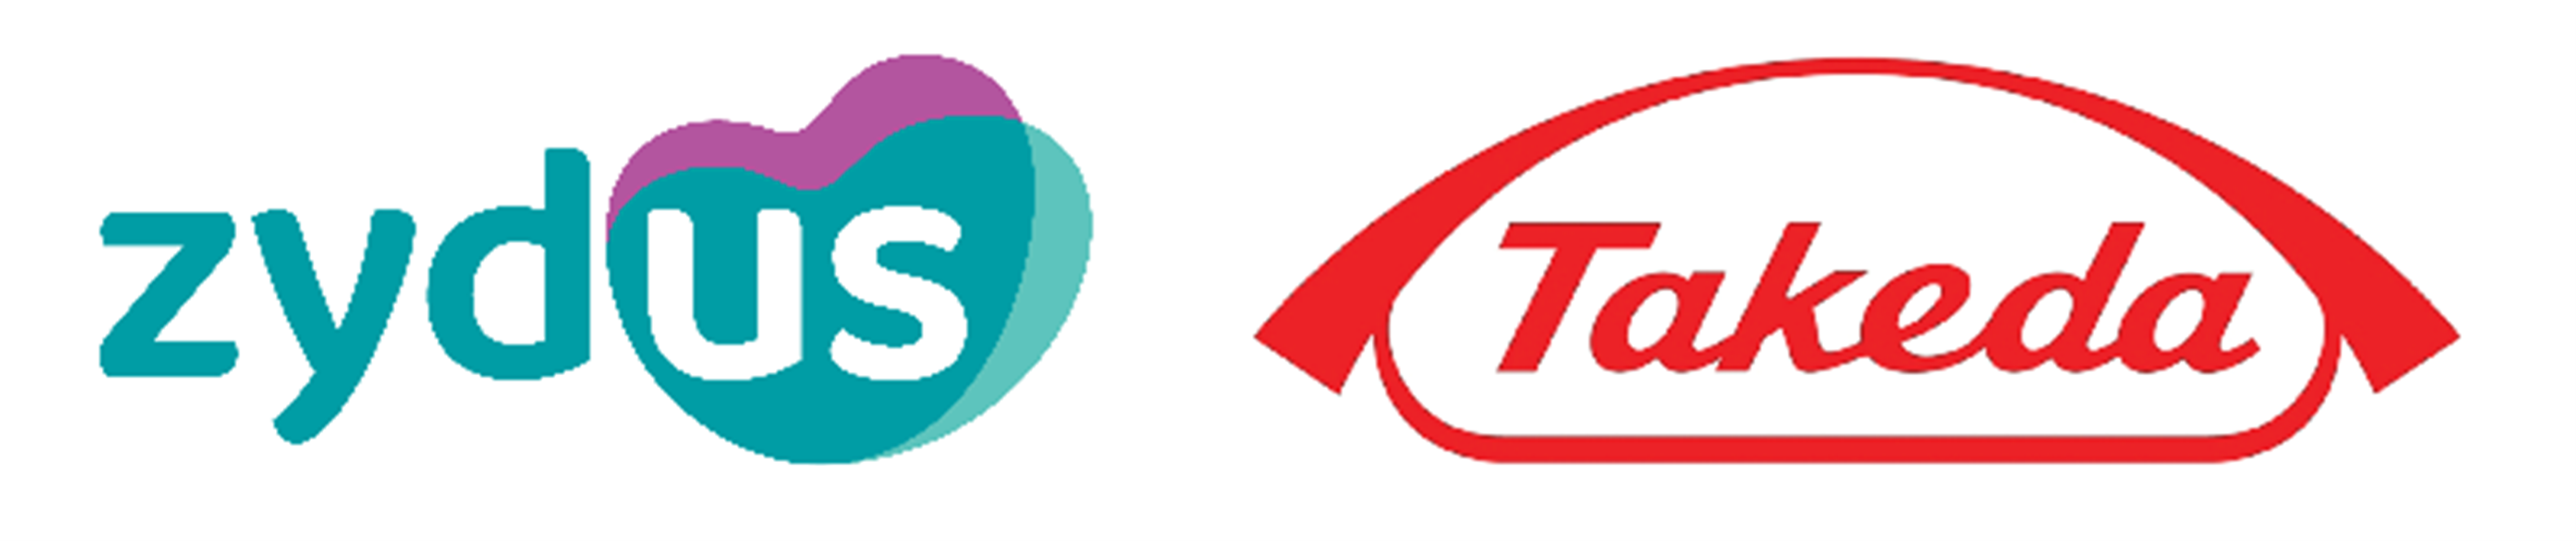 Takeda-Zydus logos